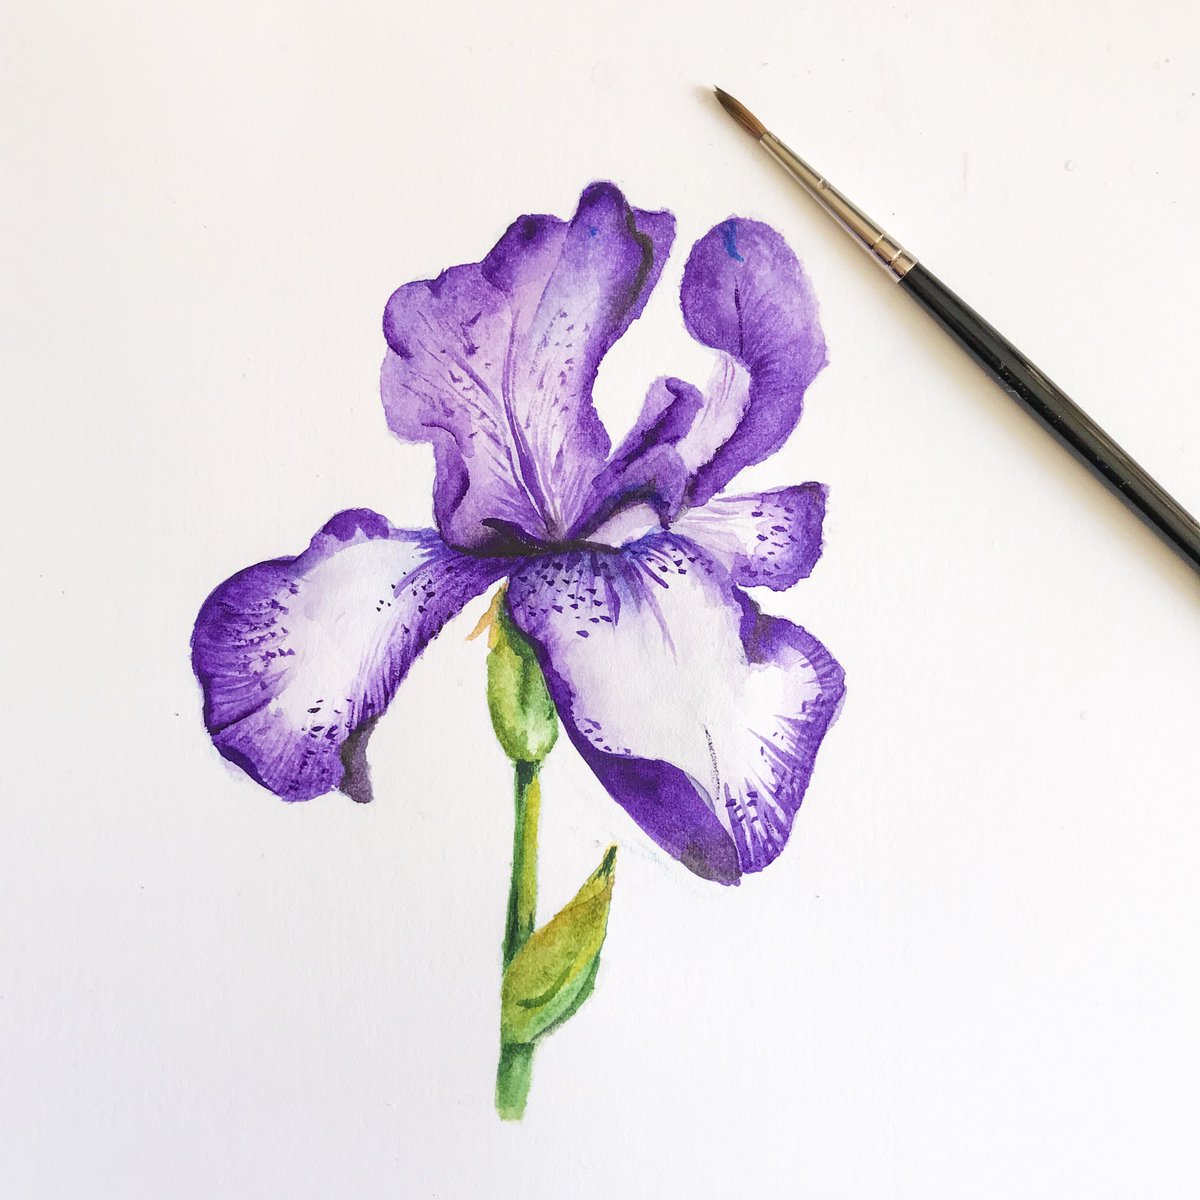 Handpainted iris flower for clients’s logo .
.
.
.
#watercolor #watercolour #watercolourinspiration #painting #paint #art #artwork #artinspiration #tuesday #pretty #logo #logodesign #graphicdesign #graphicdesigner #artist #handpainted